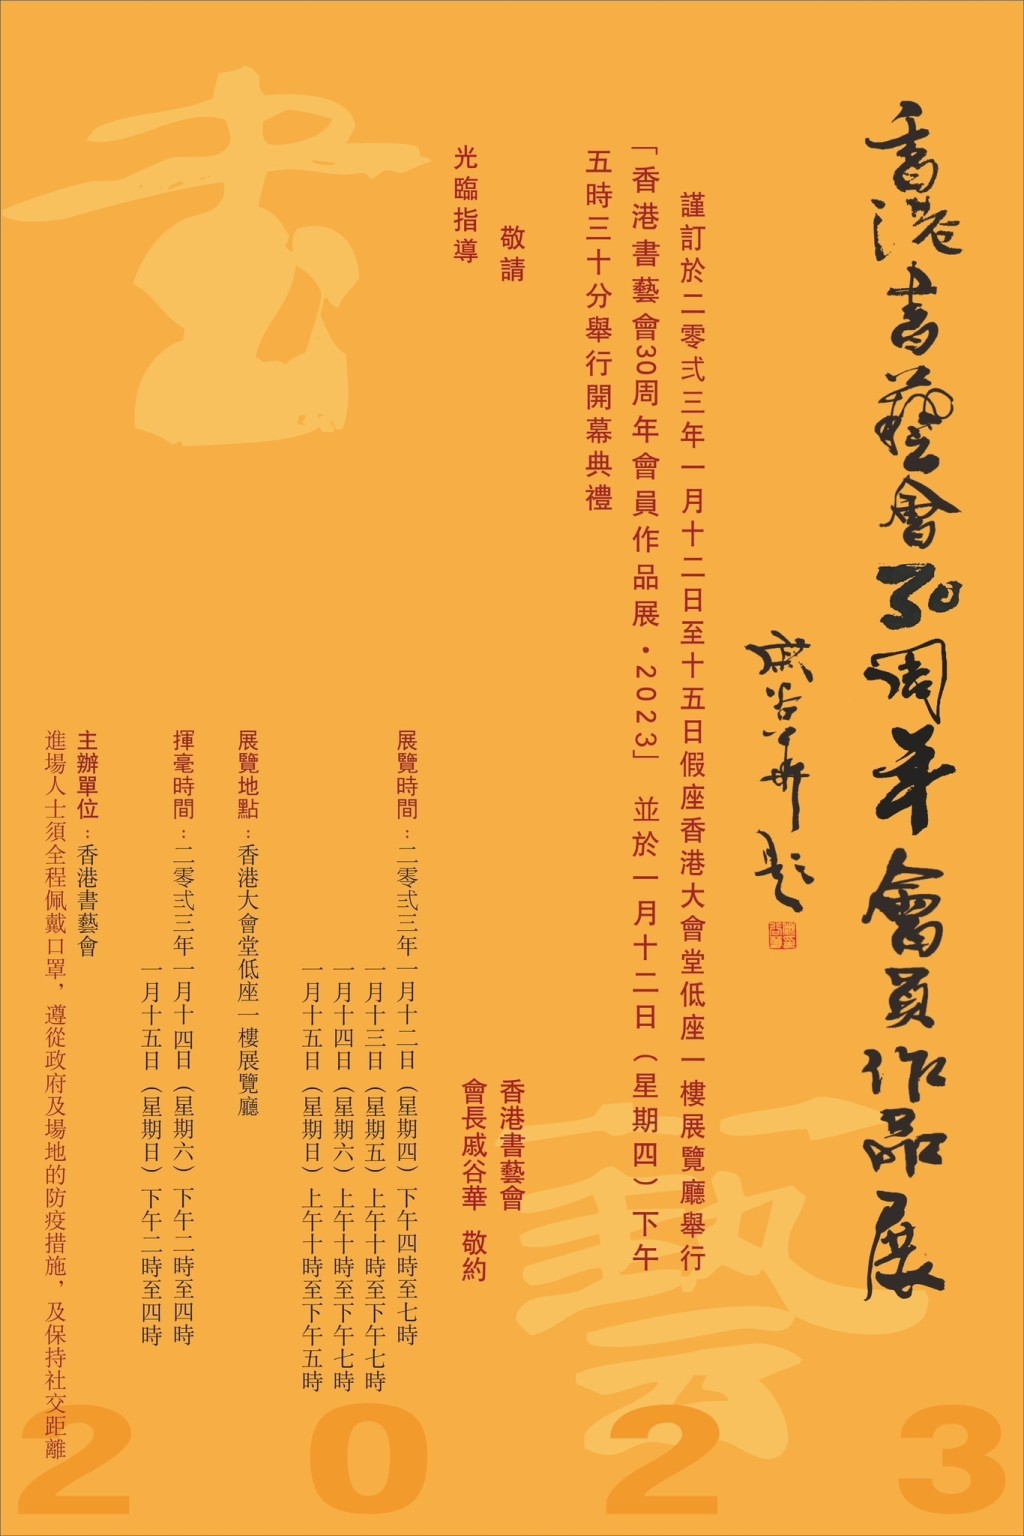 「香港书艺会30周年会员作品展」展出戚谷华及其学生超过130幅作品。